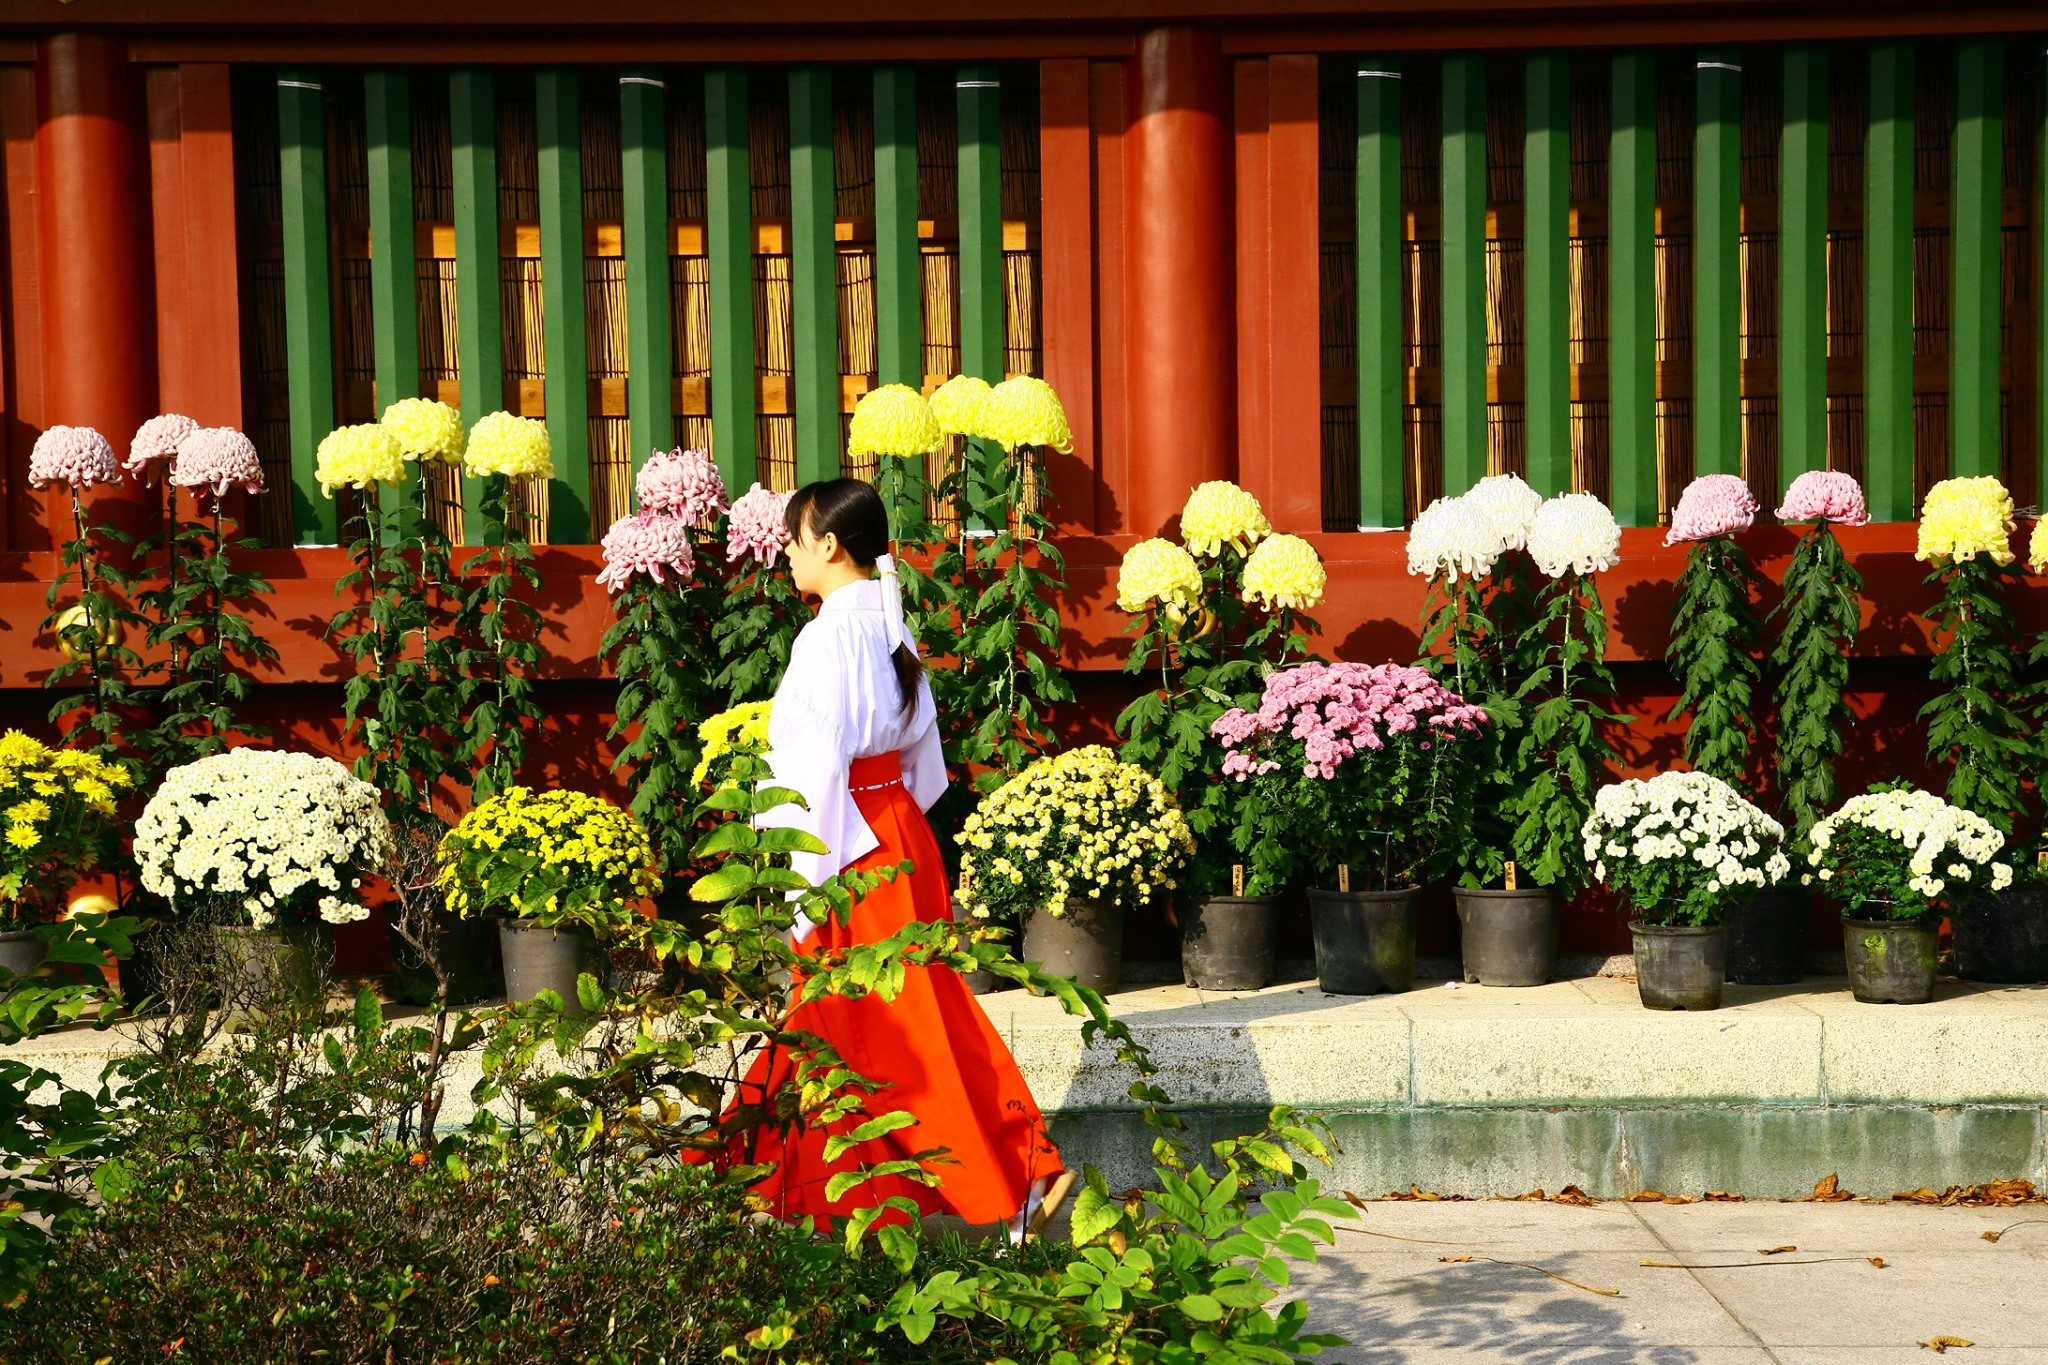 Jetons un coup d’œil chez nos voisins: Un regard global sur le chrysanthème – Japon